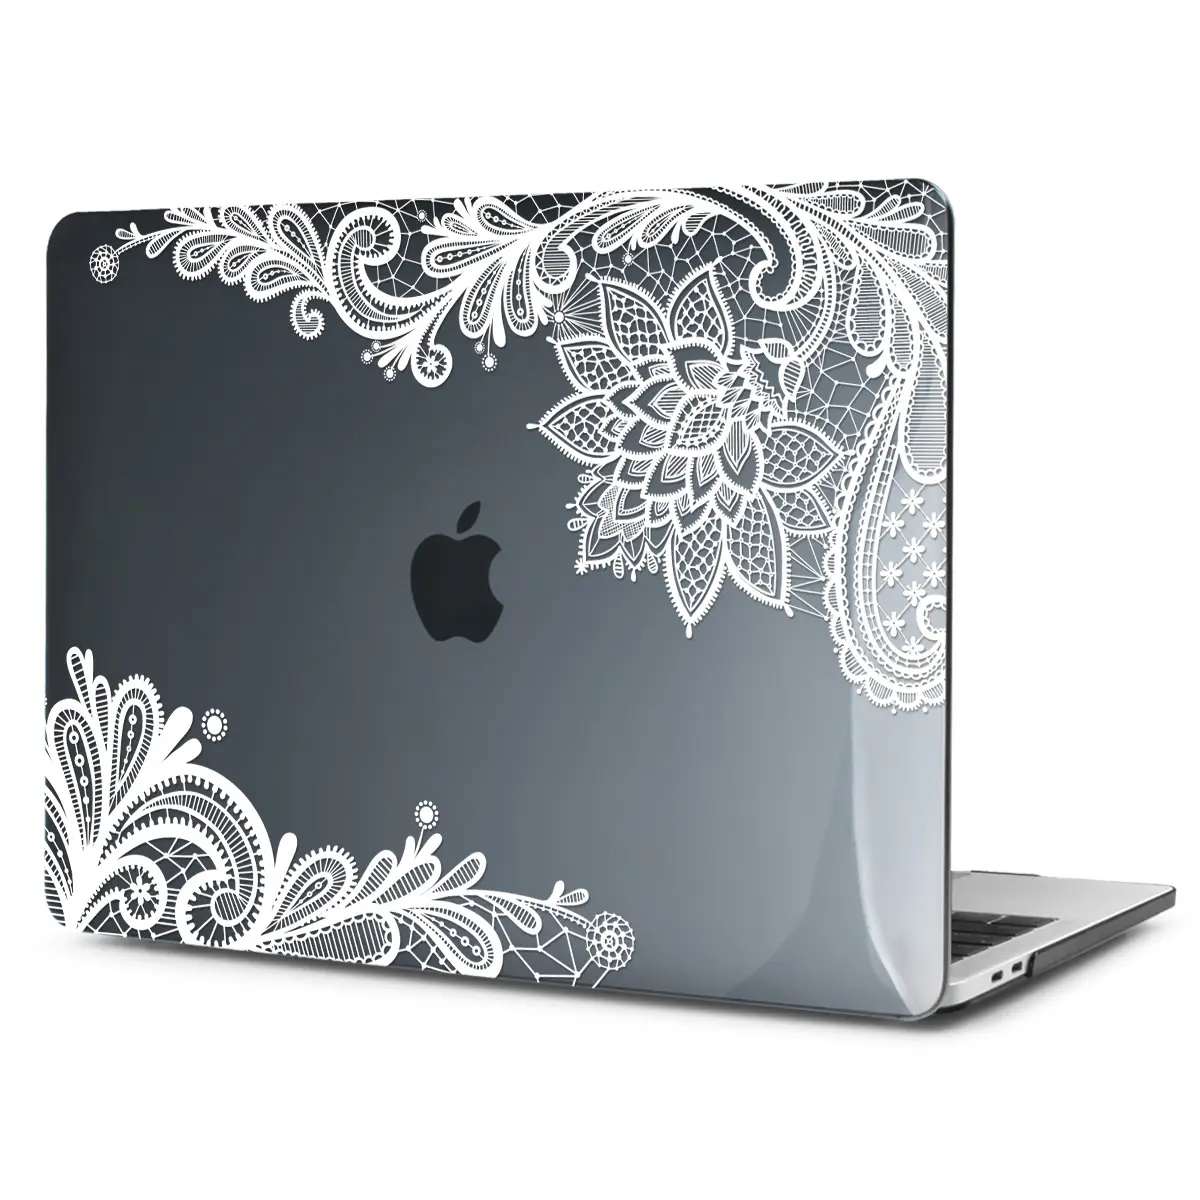 OEM เคสแล็ปท็อป Go สำหรับ Macbook Pro13,ดีไซน์แบบขุ่นกันน้ำลายลูกไม้สีขาว